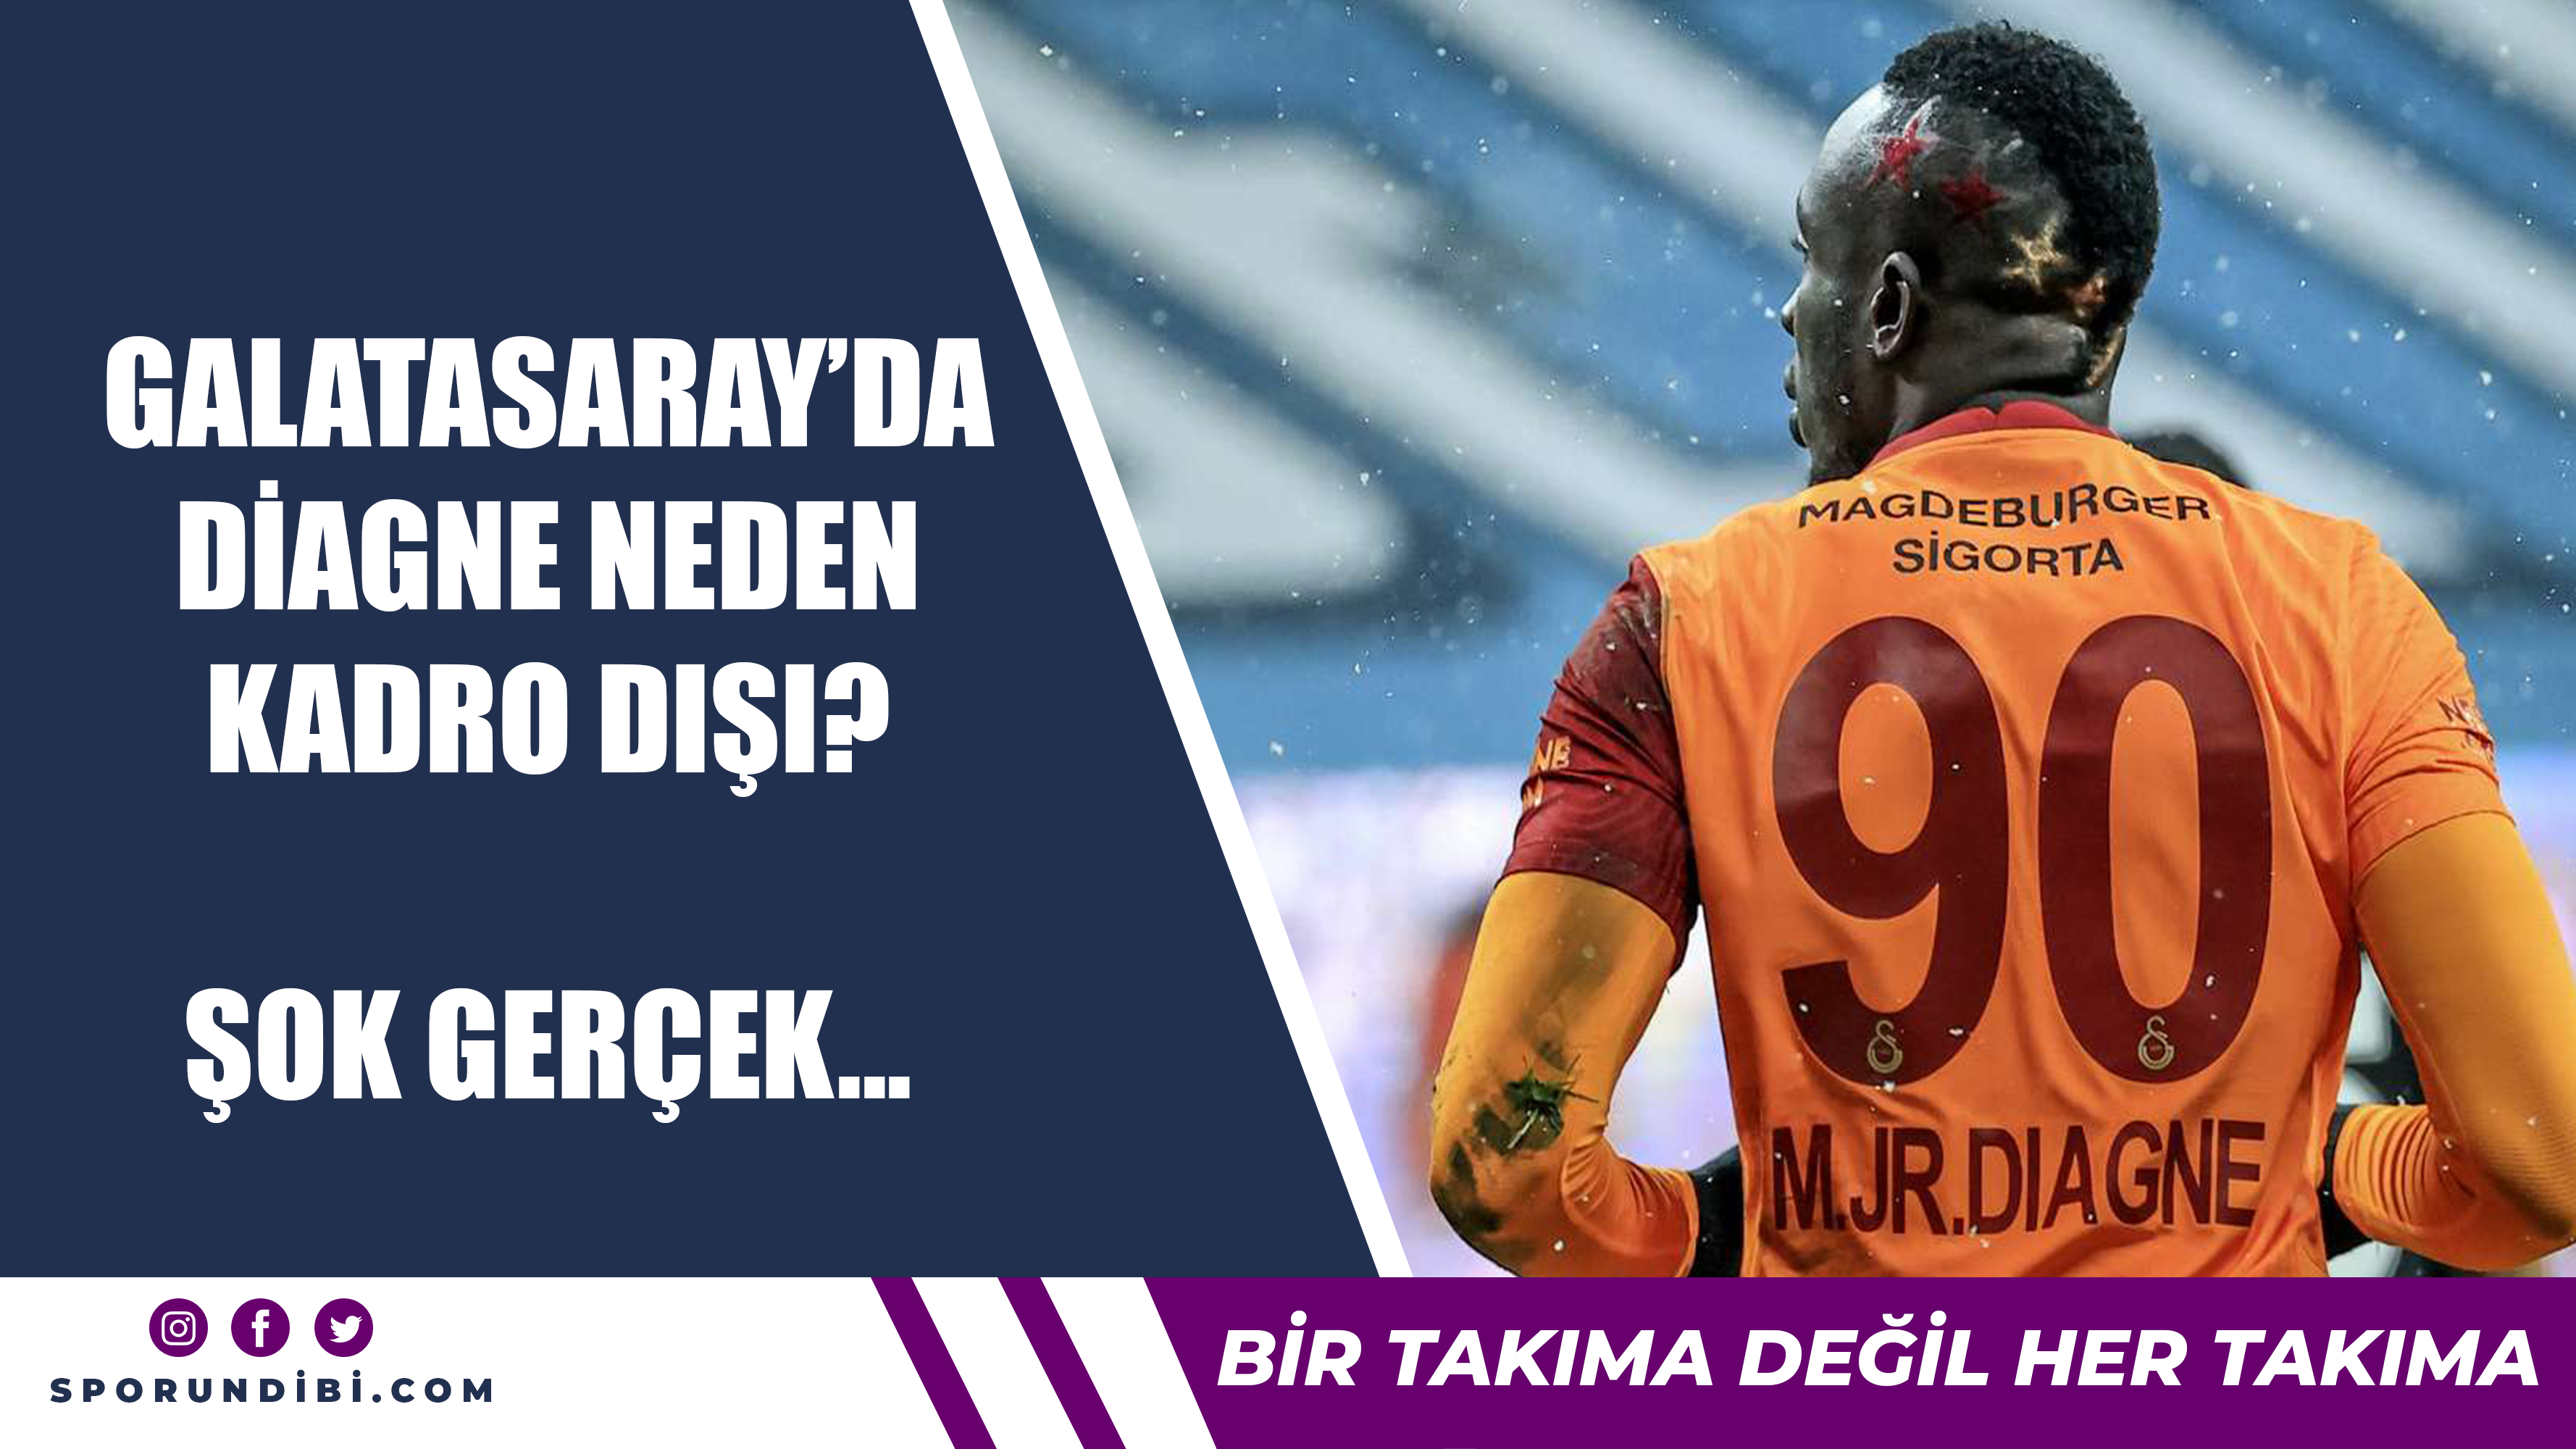 Galatasaray'da Diagne neden kadro dışı? Şok gerçek...